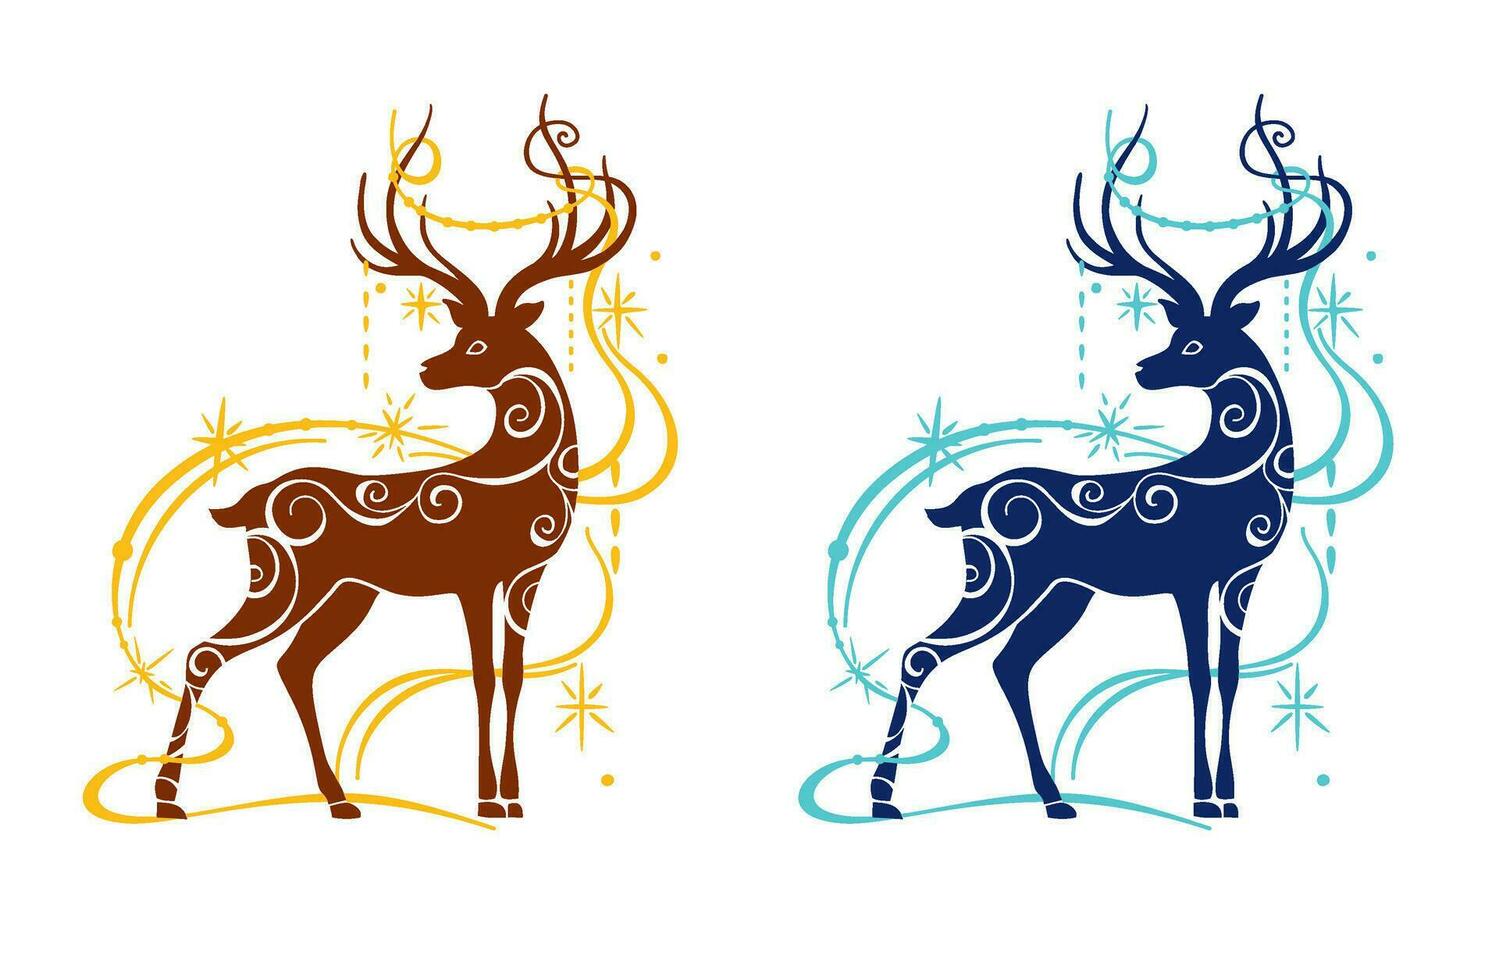 Noël illustration, la magie cerf logo, fête invitation, cerf forme, vecteur